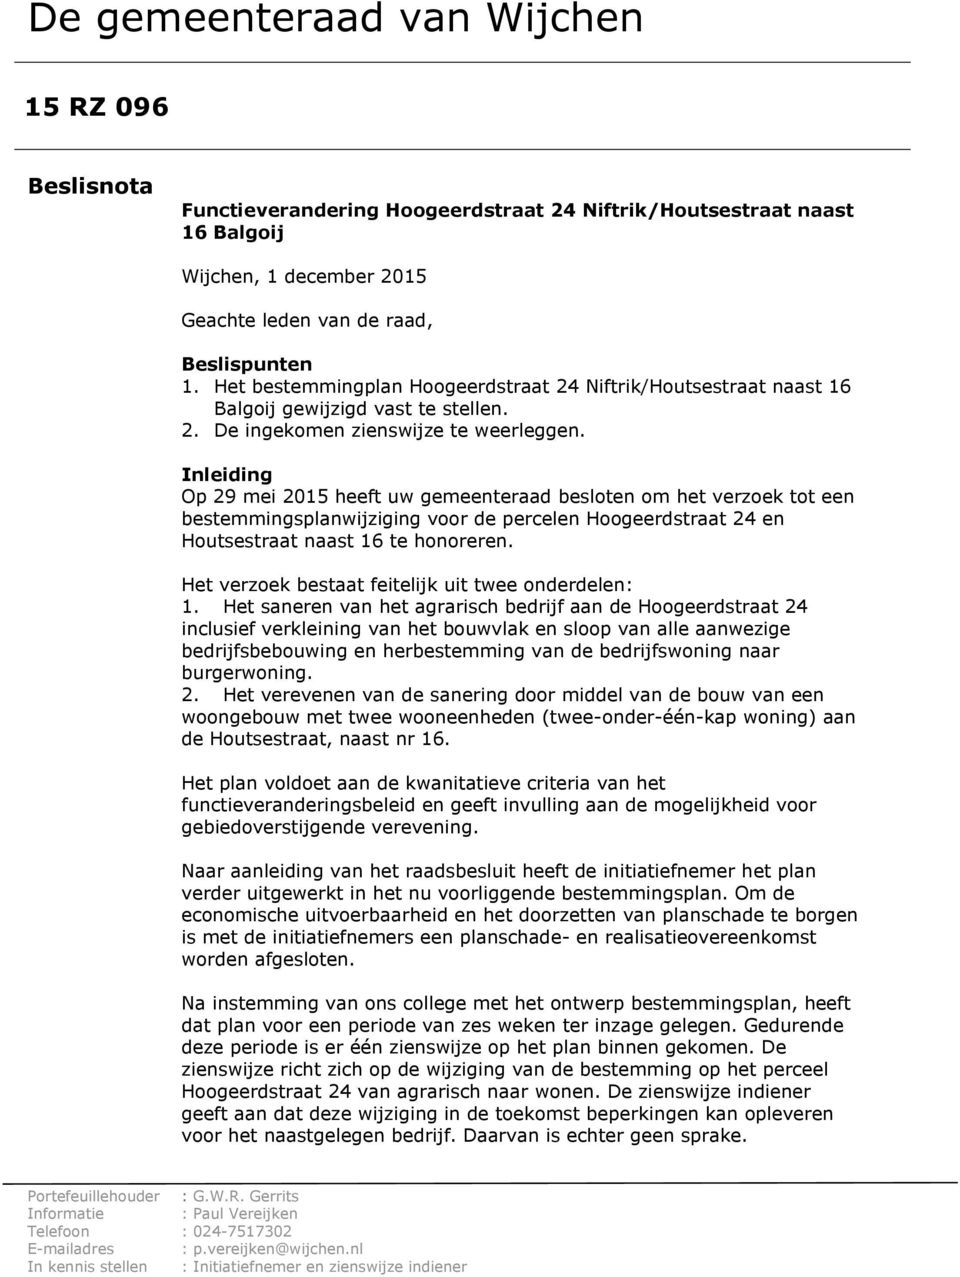 Inleiding Op 29 mei 2015 heeft uw gemeenteraad besloten om het verzoek tot een bestemmingsplanwijziging voor de percelen Hoogeerdstraat 24 en Houtsestraat naast 16 te honoreren.